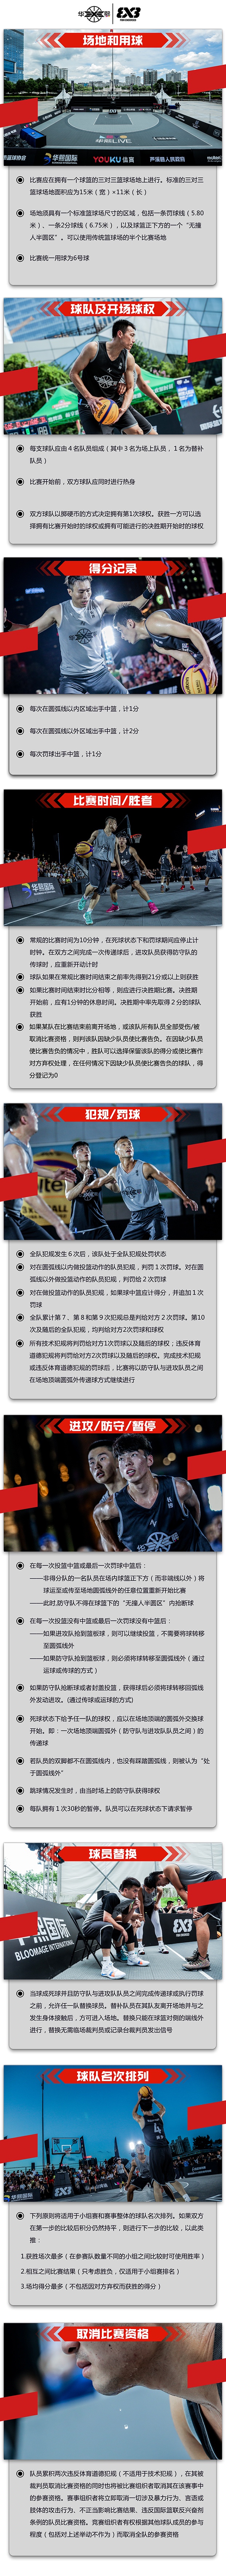 fiba三人篮球规则(「规则详解」教你玩转2018国际篮联三对三大师赛预选赛全国总决赛)